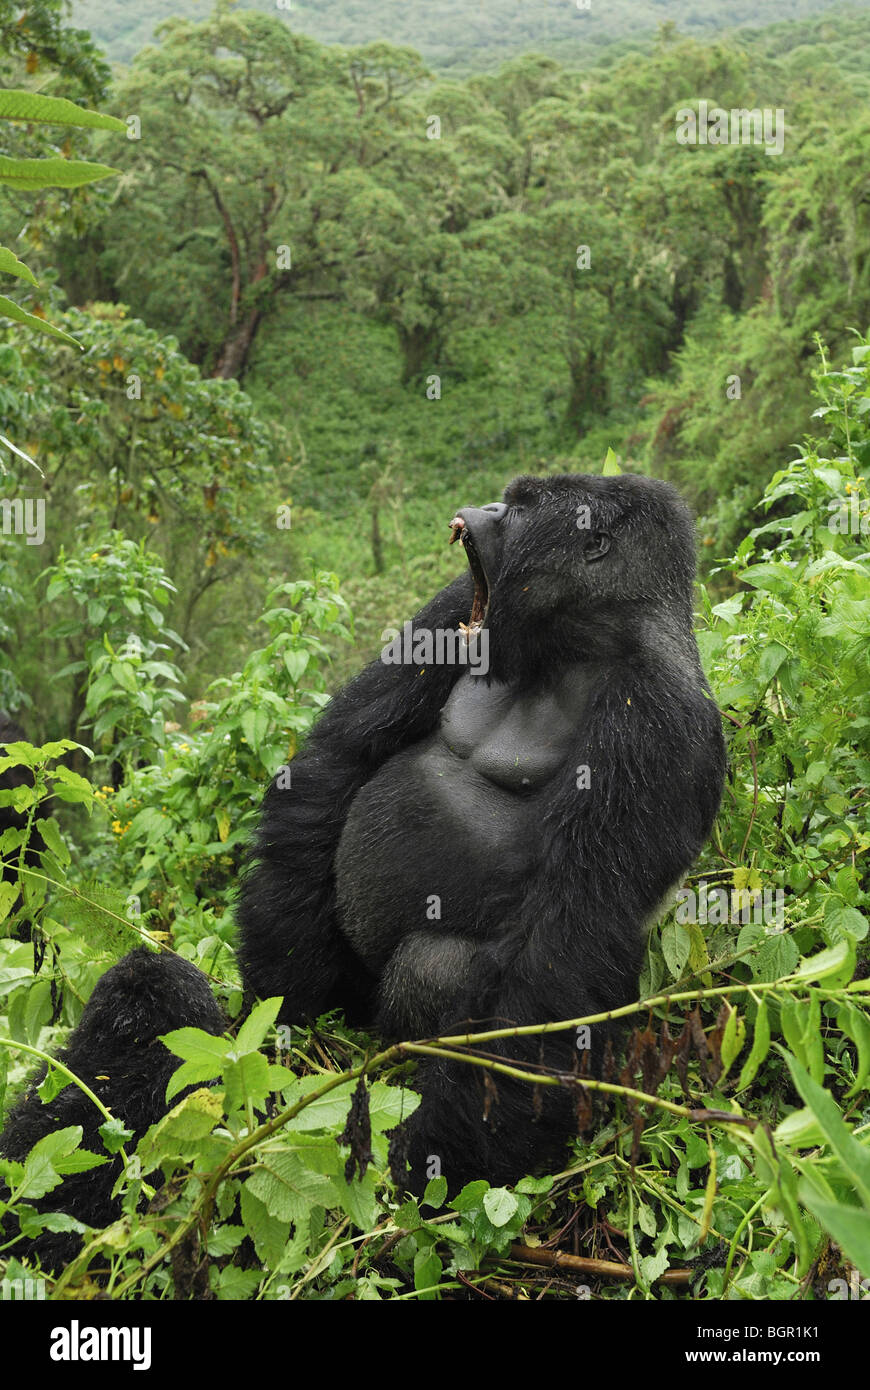 Gorille de montagne (Gorilla beringei beringei), Silverback avec la bouche ouverte, le parc national des volcans, Rwanda Banque D'Images